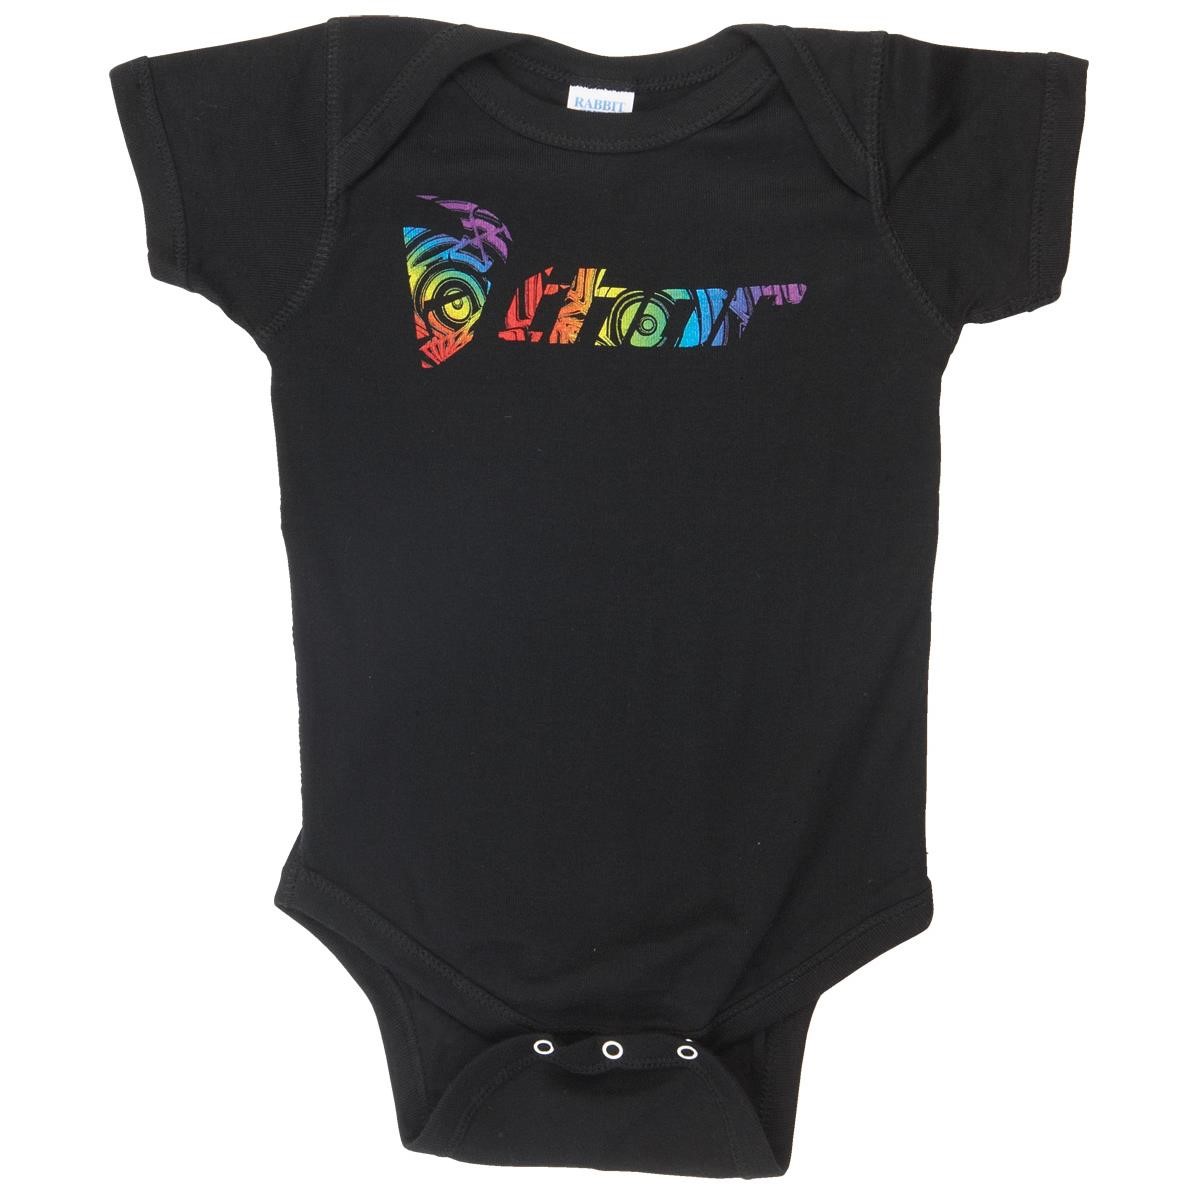 Freizeit/Streetwear Bekleidung-Unterwäsche/Schlafkleidung - Thor Baby Body Onsies Ripple Black